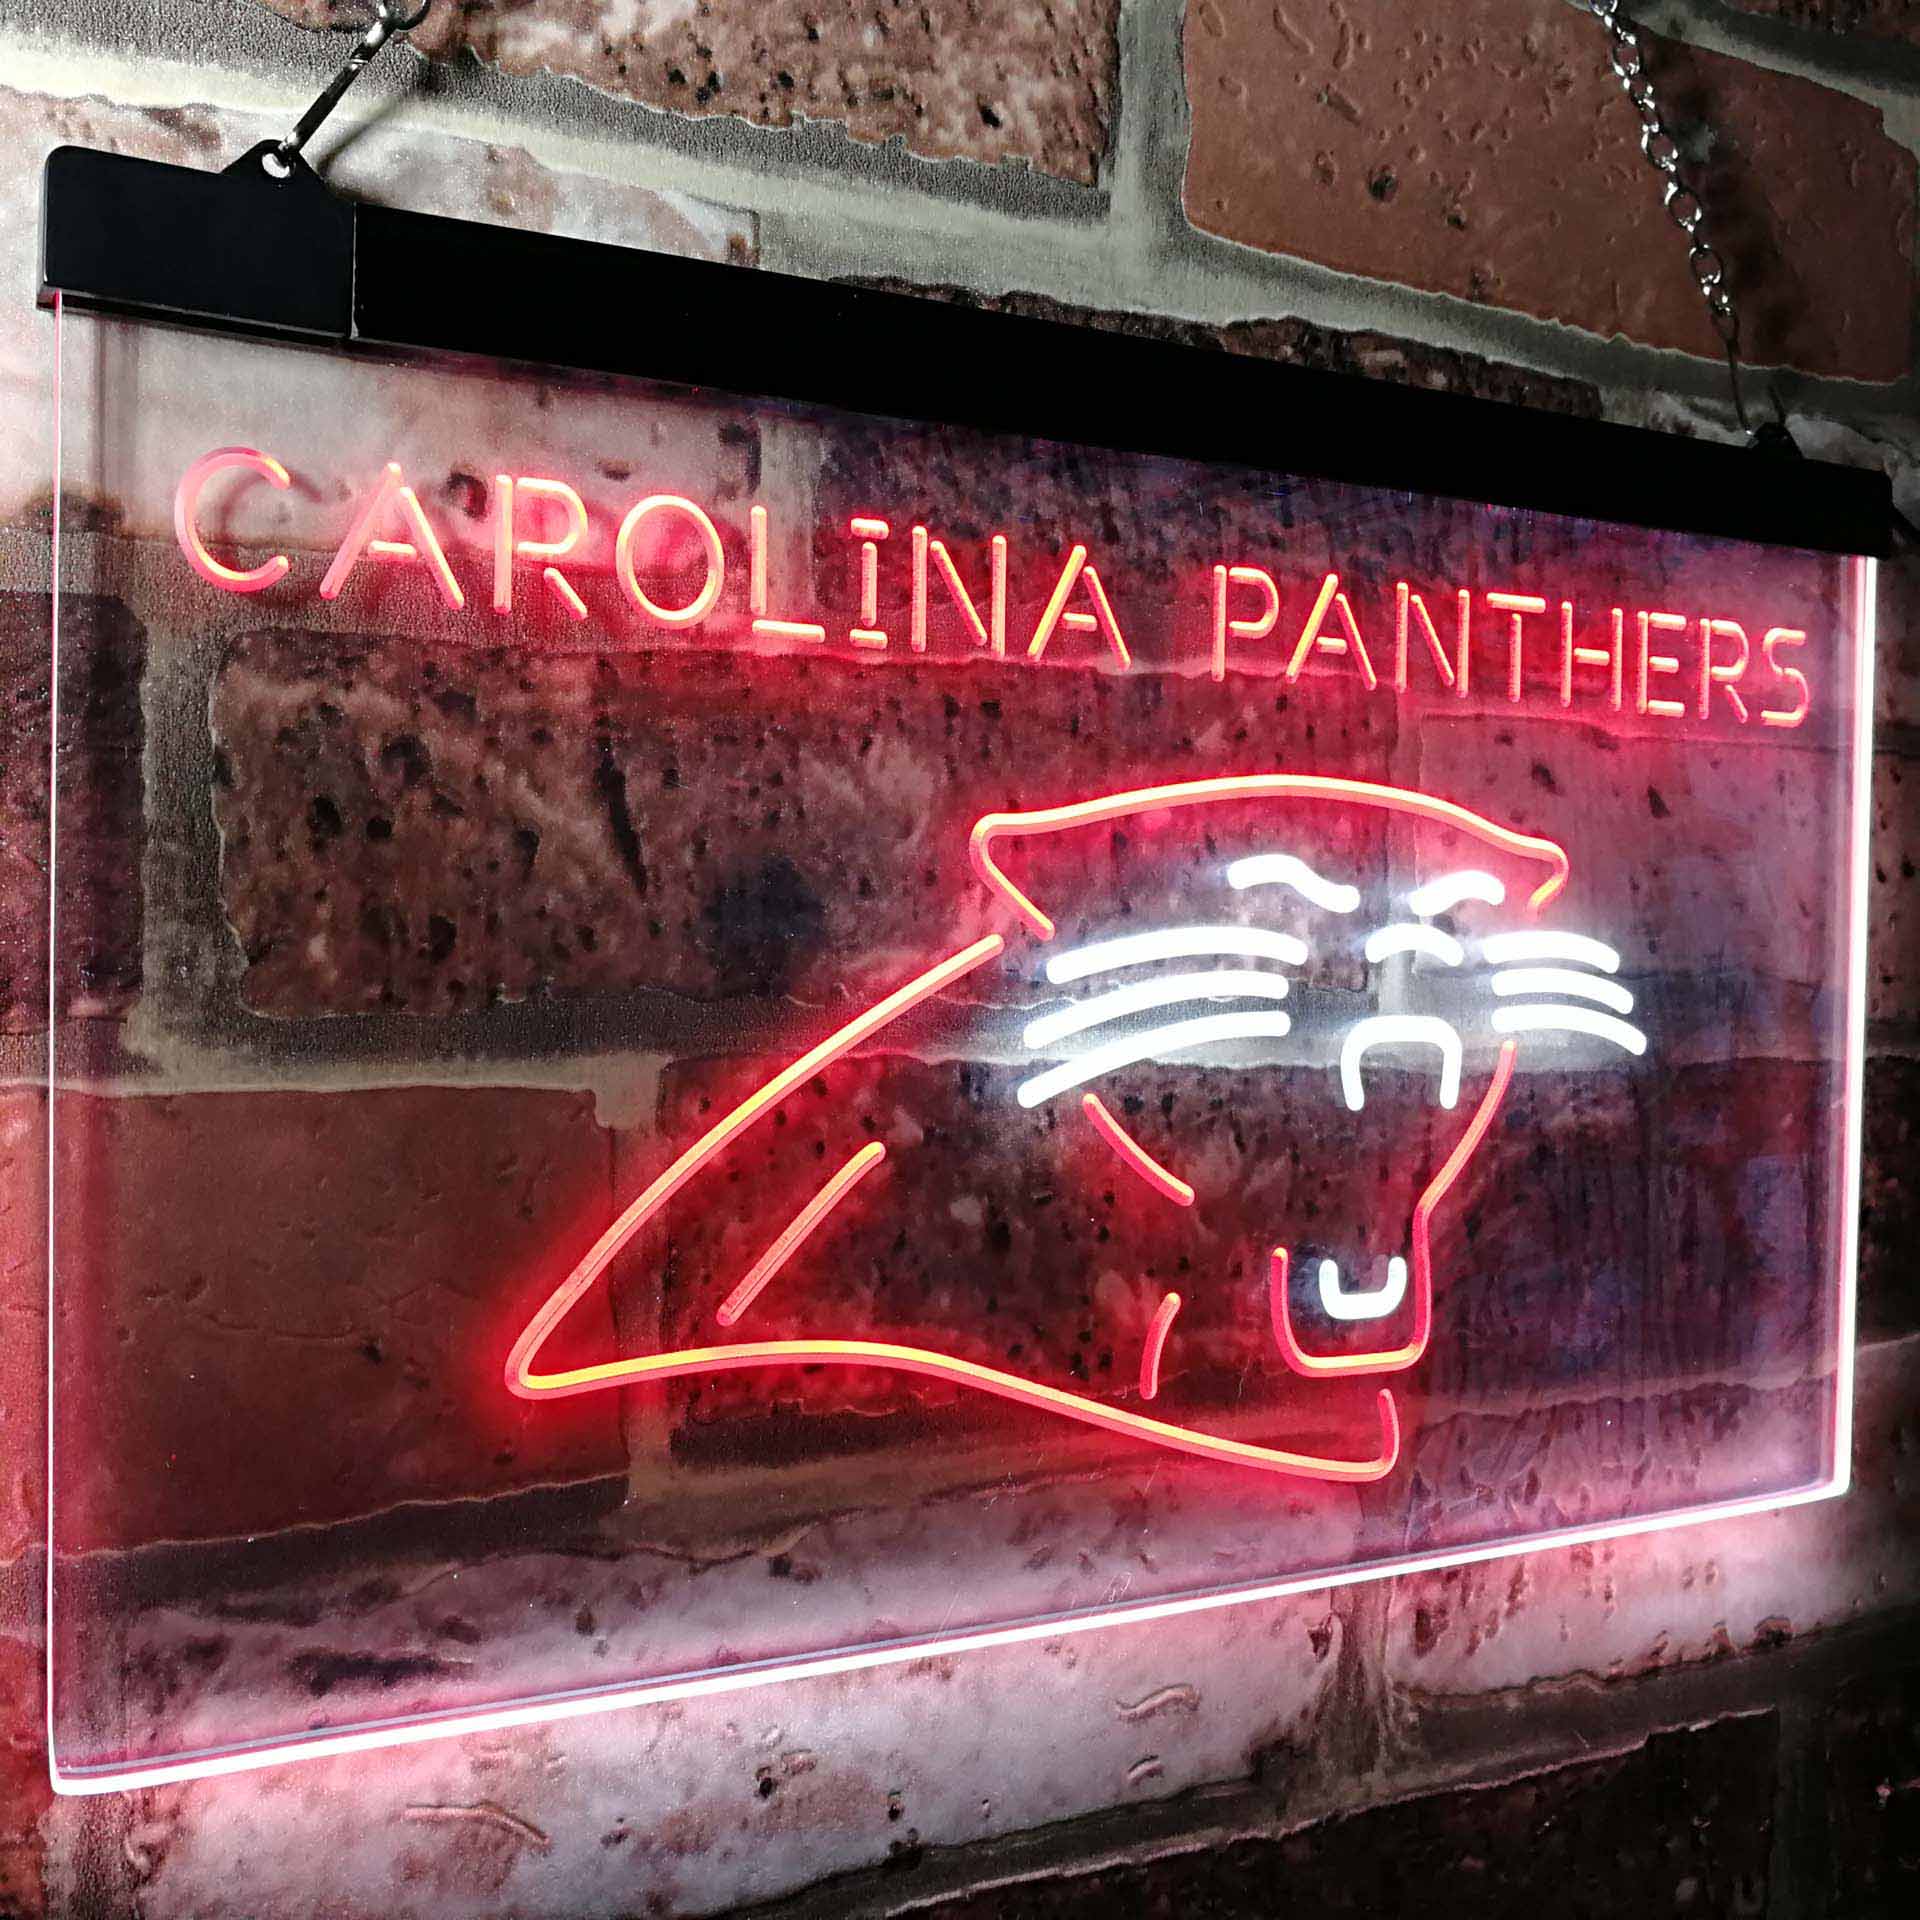 Carolina Panthers Football Bar Decor Neon LED Sign